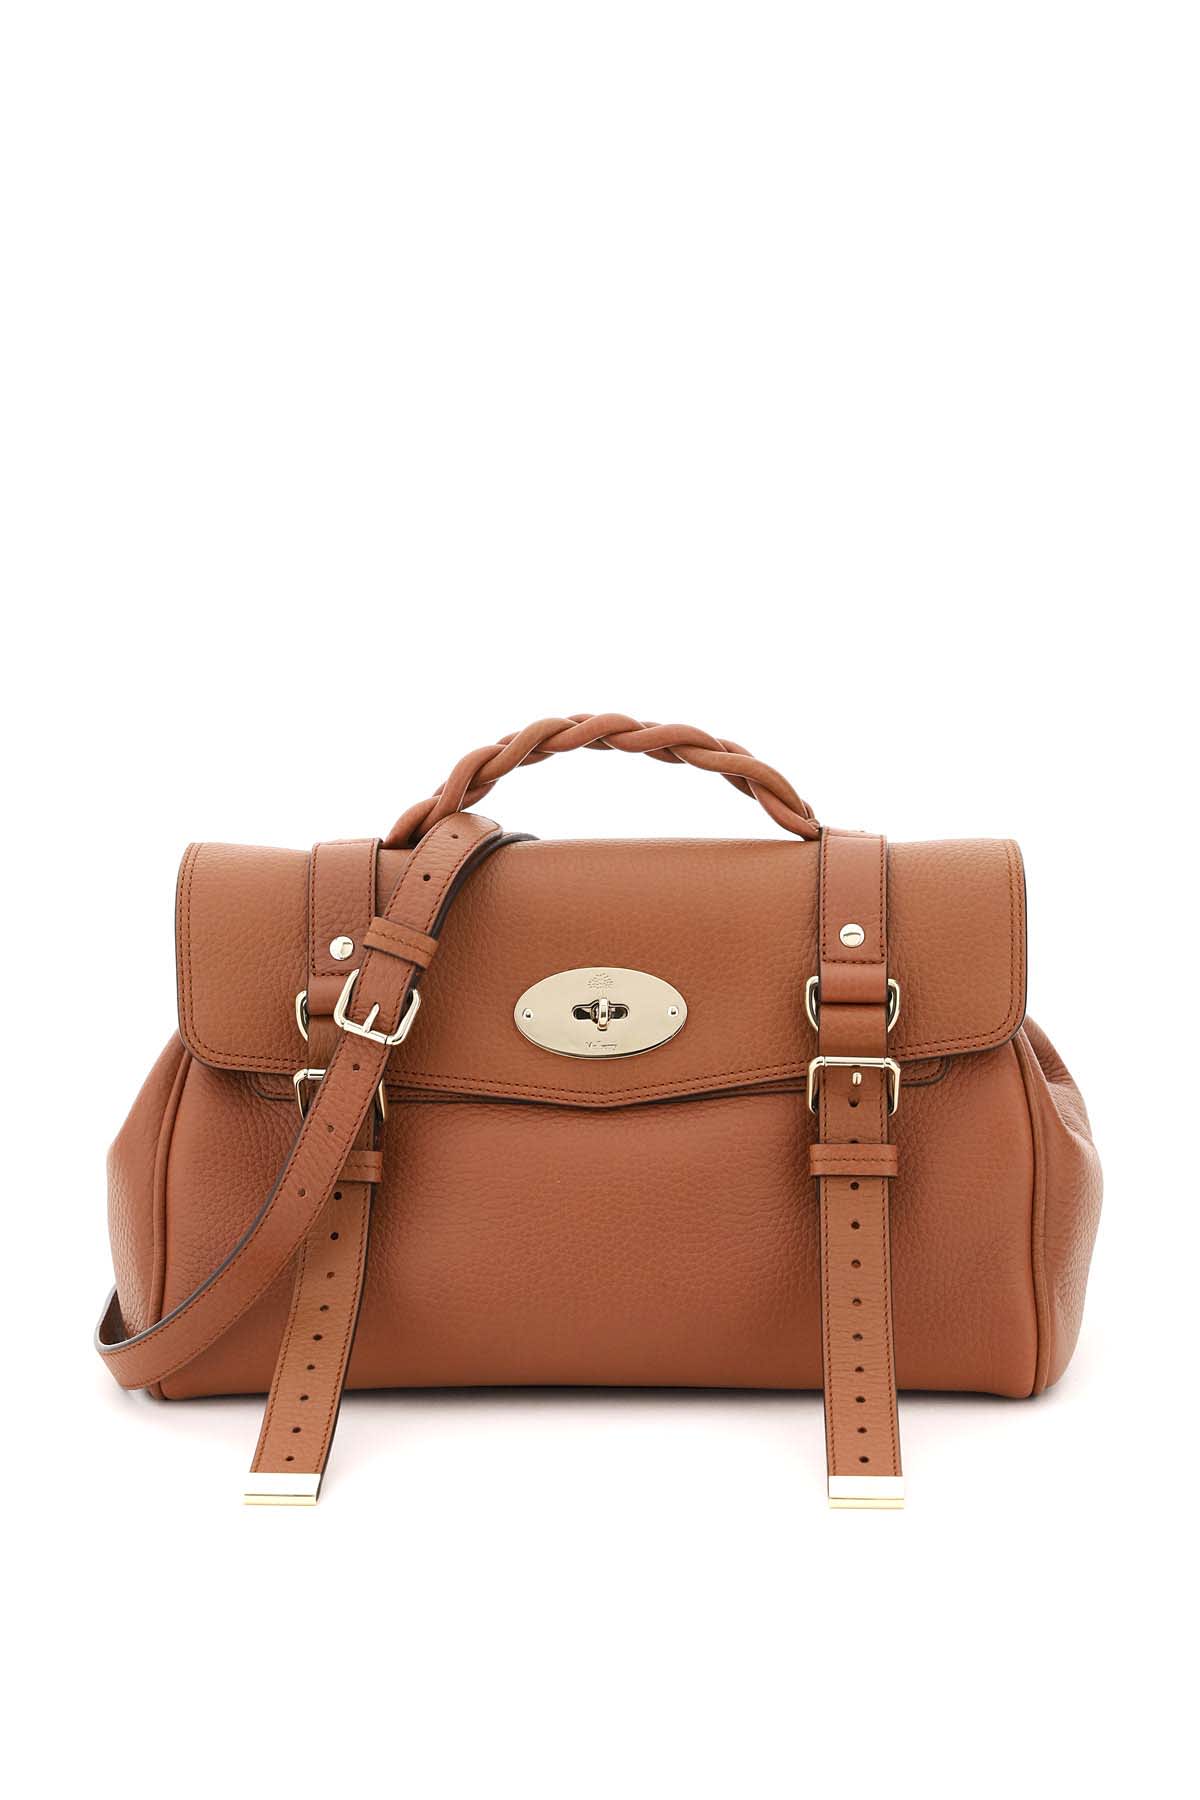 Mulberry Alexa Medium Handbag In Chestnut (brown)